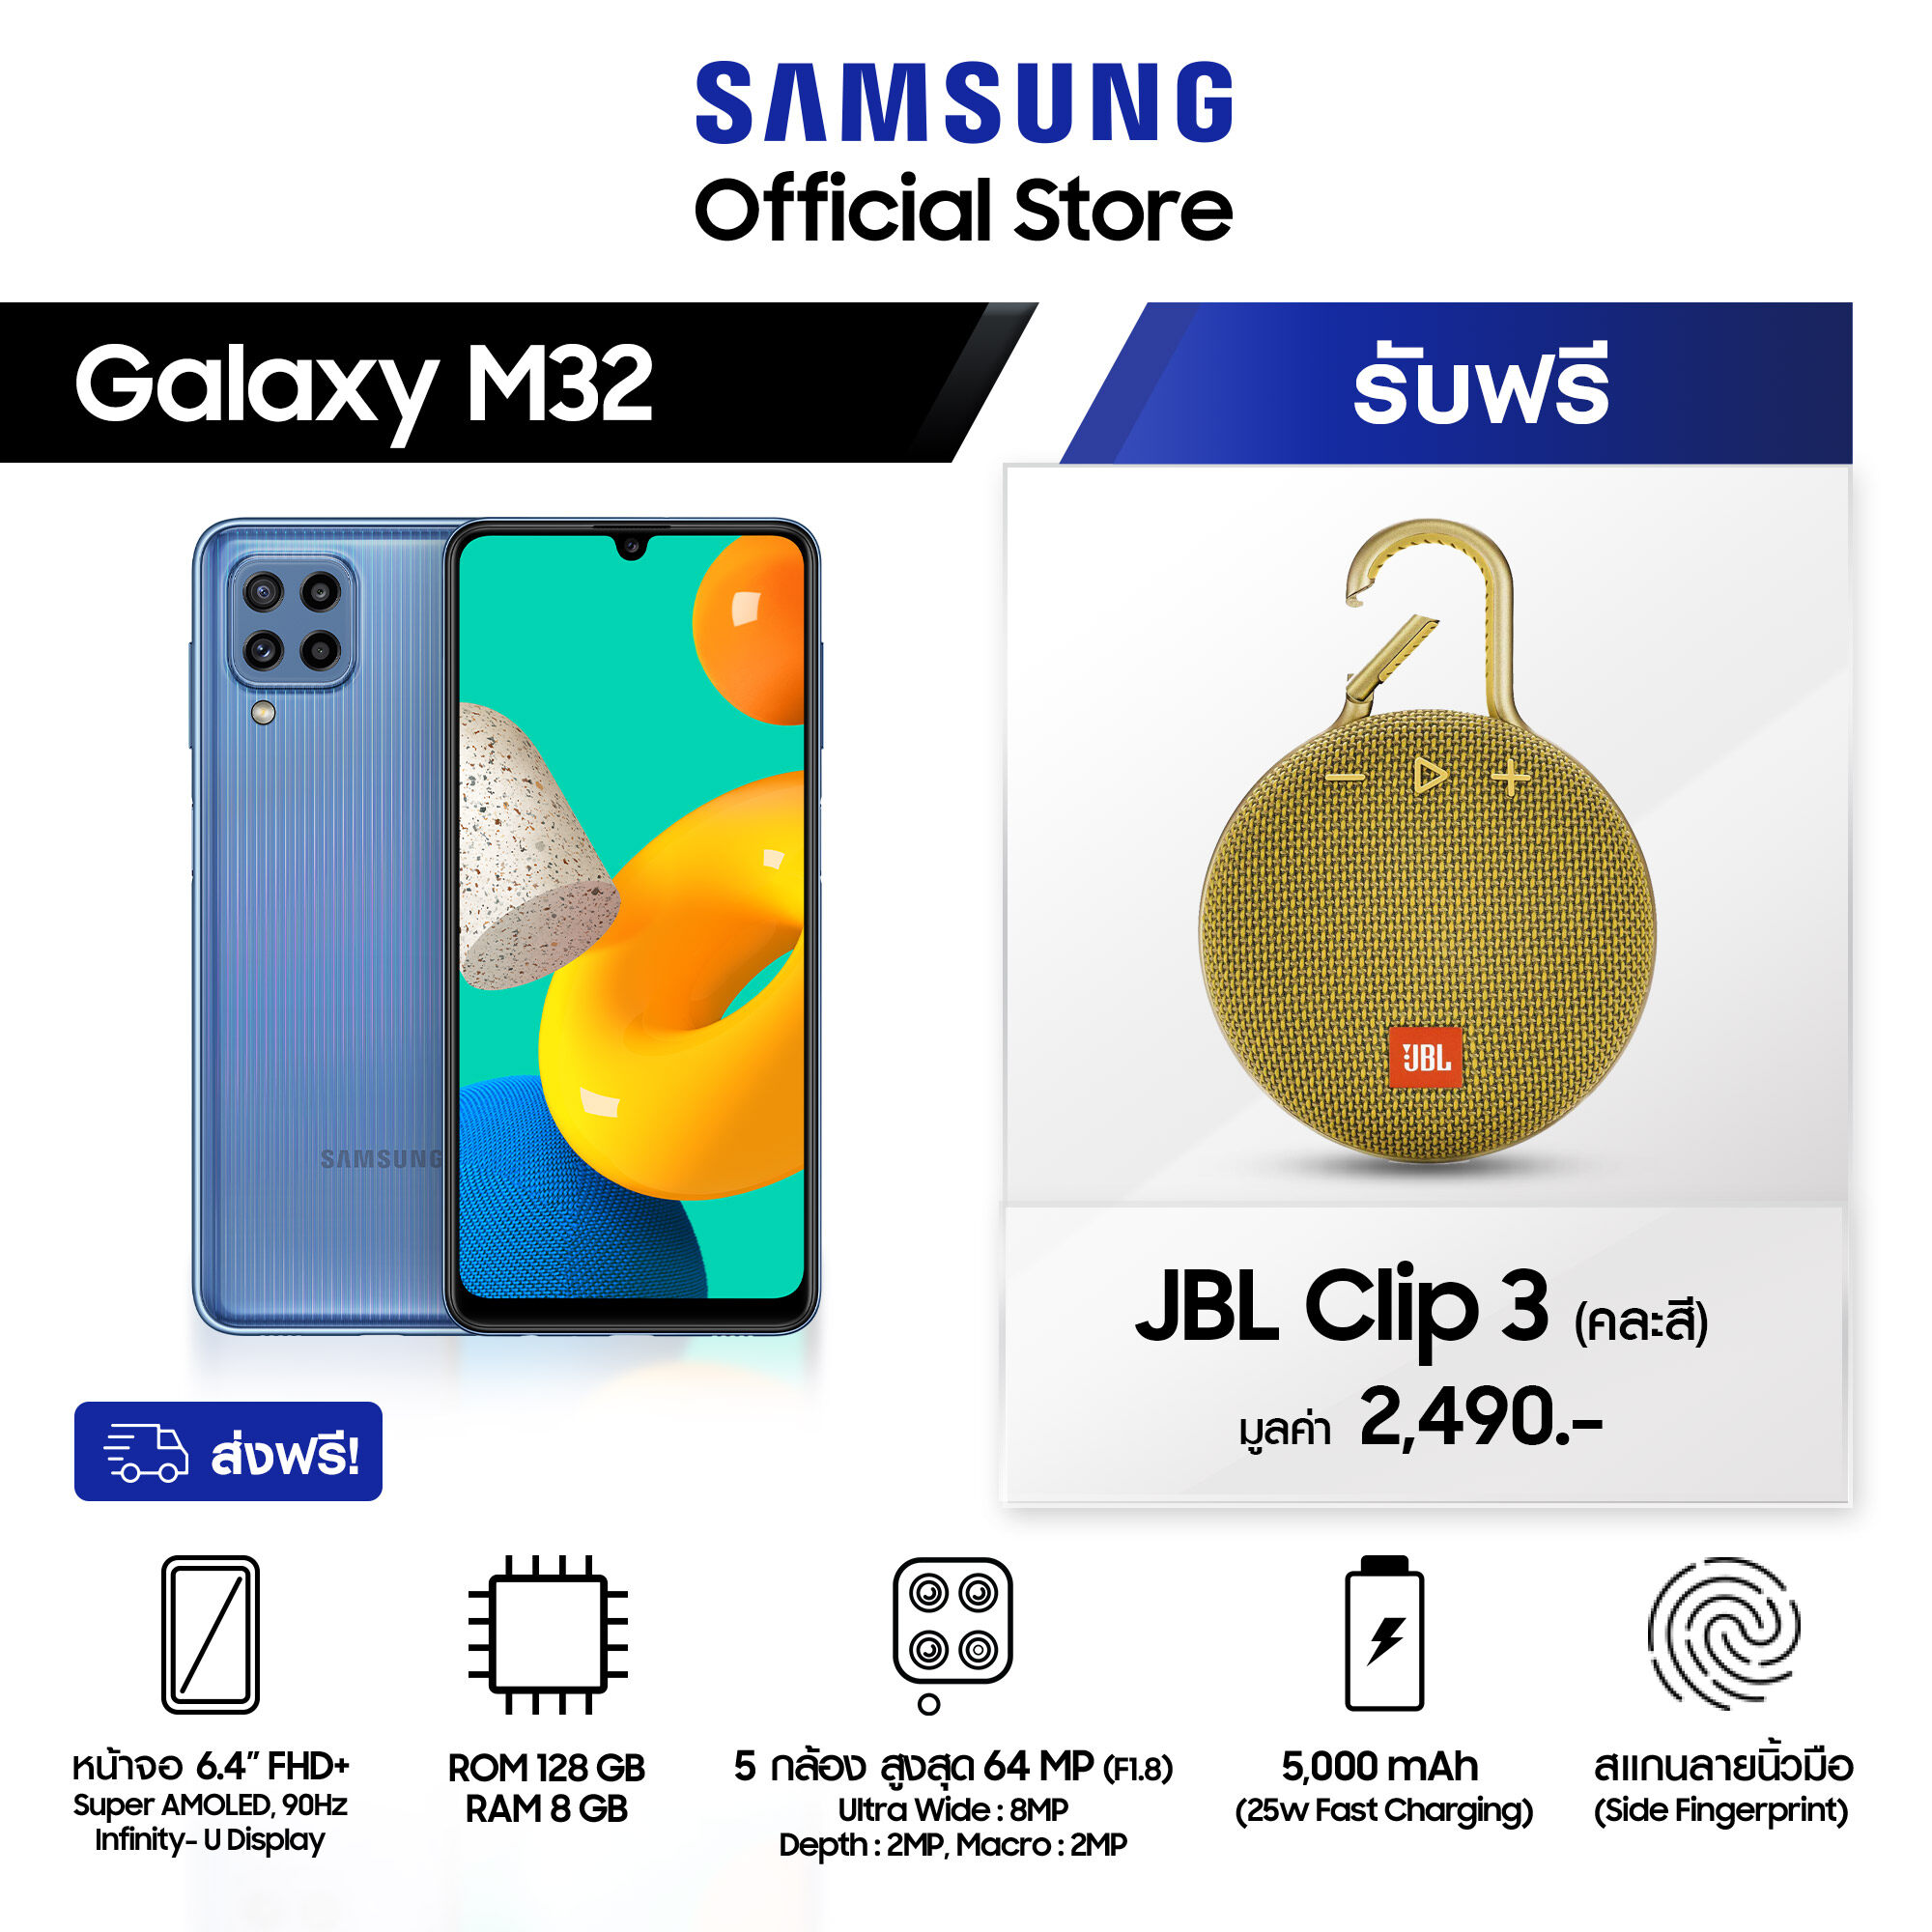 [Pre order] Samsung Galaxy M32 8/128 GB แถมฟรี ลำโพงบลูทูธ JBL Clip3 คละสี มูลค่า 2,490 บาท เริ่มจัดส่งสินค้าตั้งแต่ วันที่ 19 กรกฎาคม 64 เป็นต้นไป